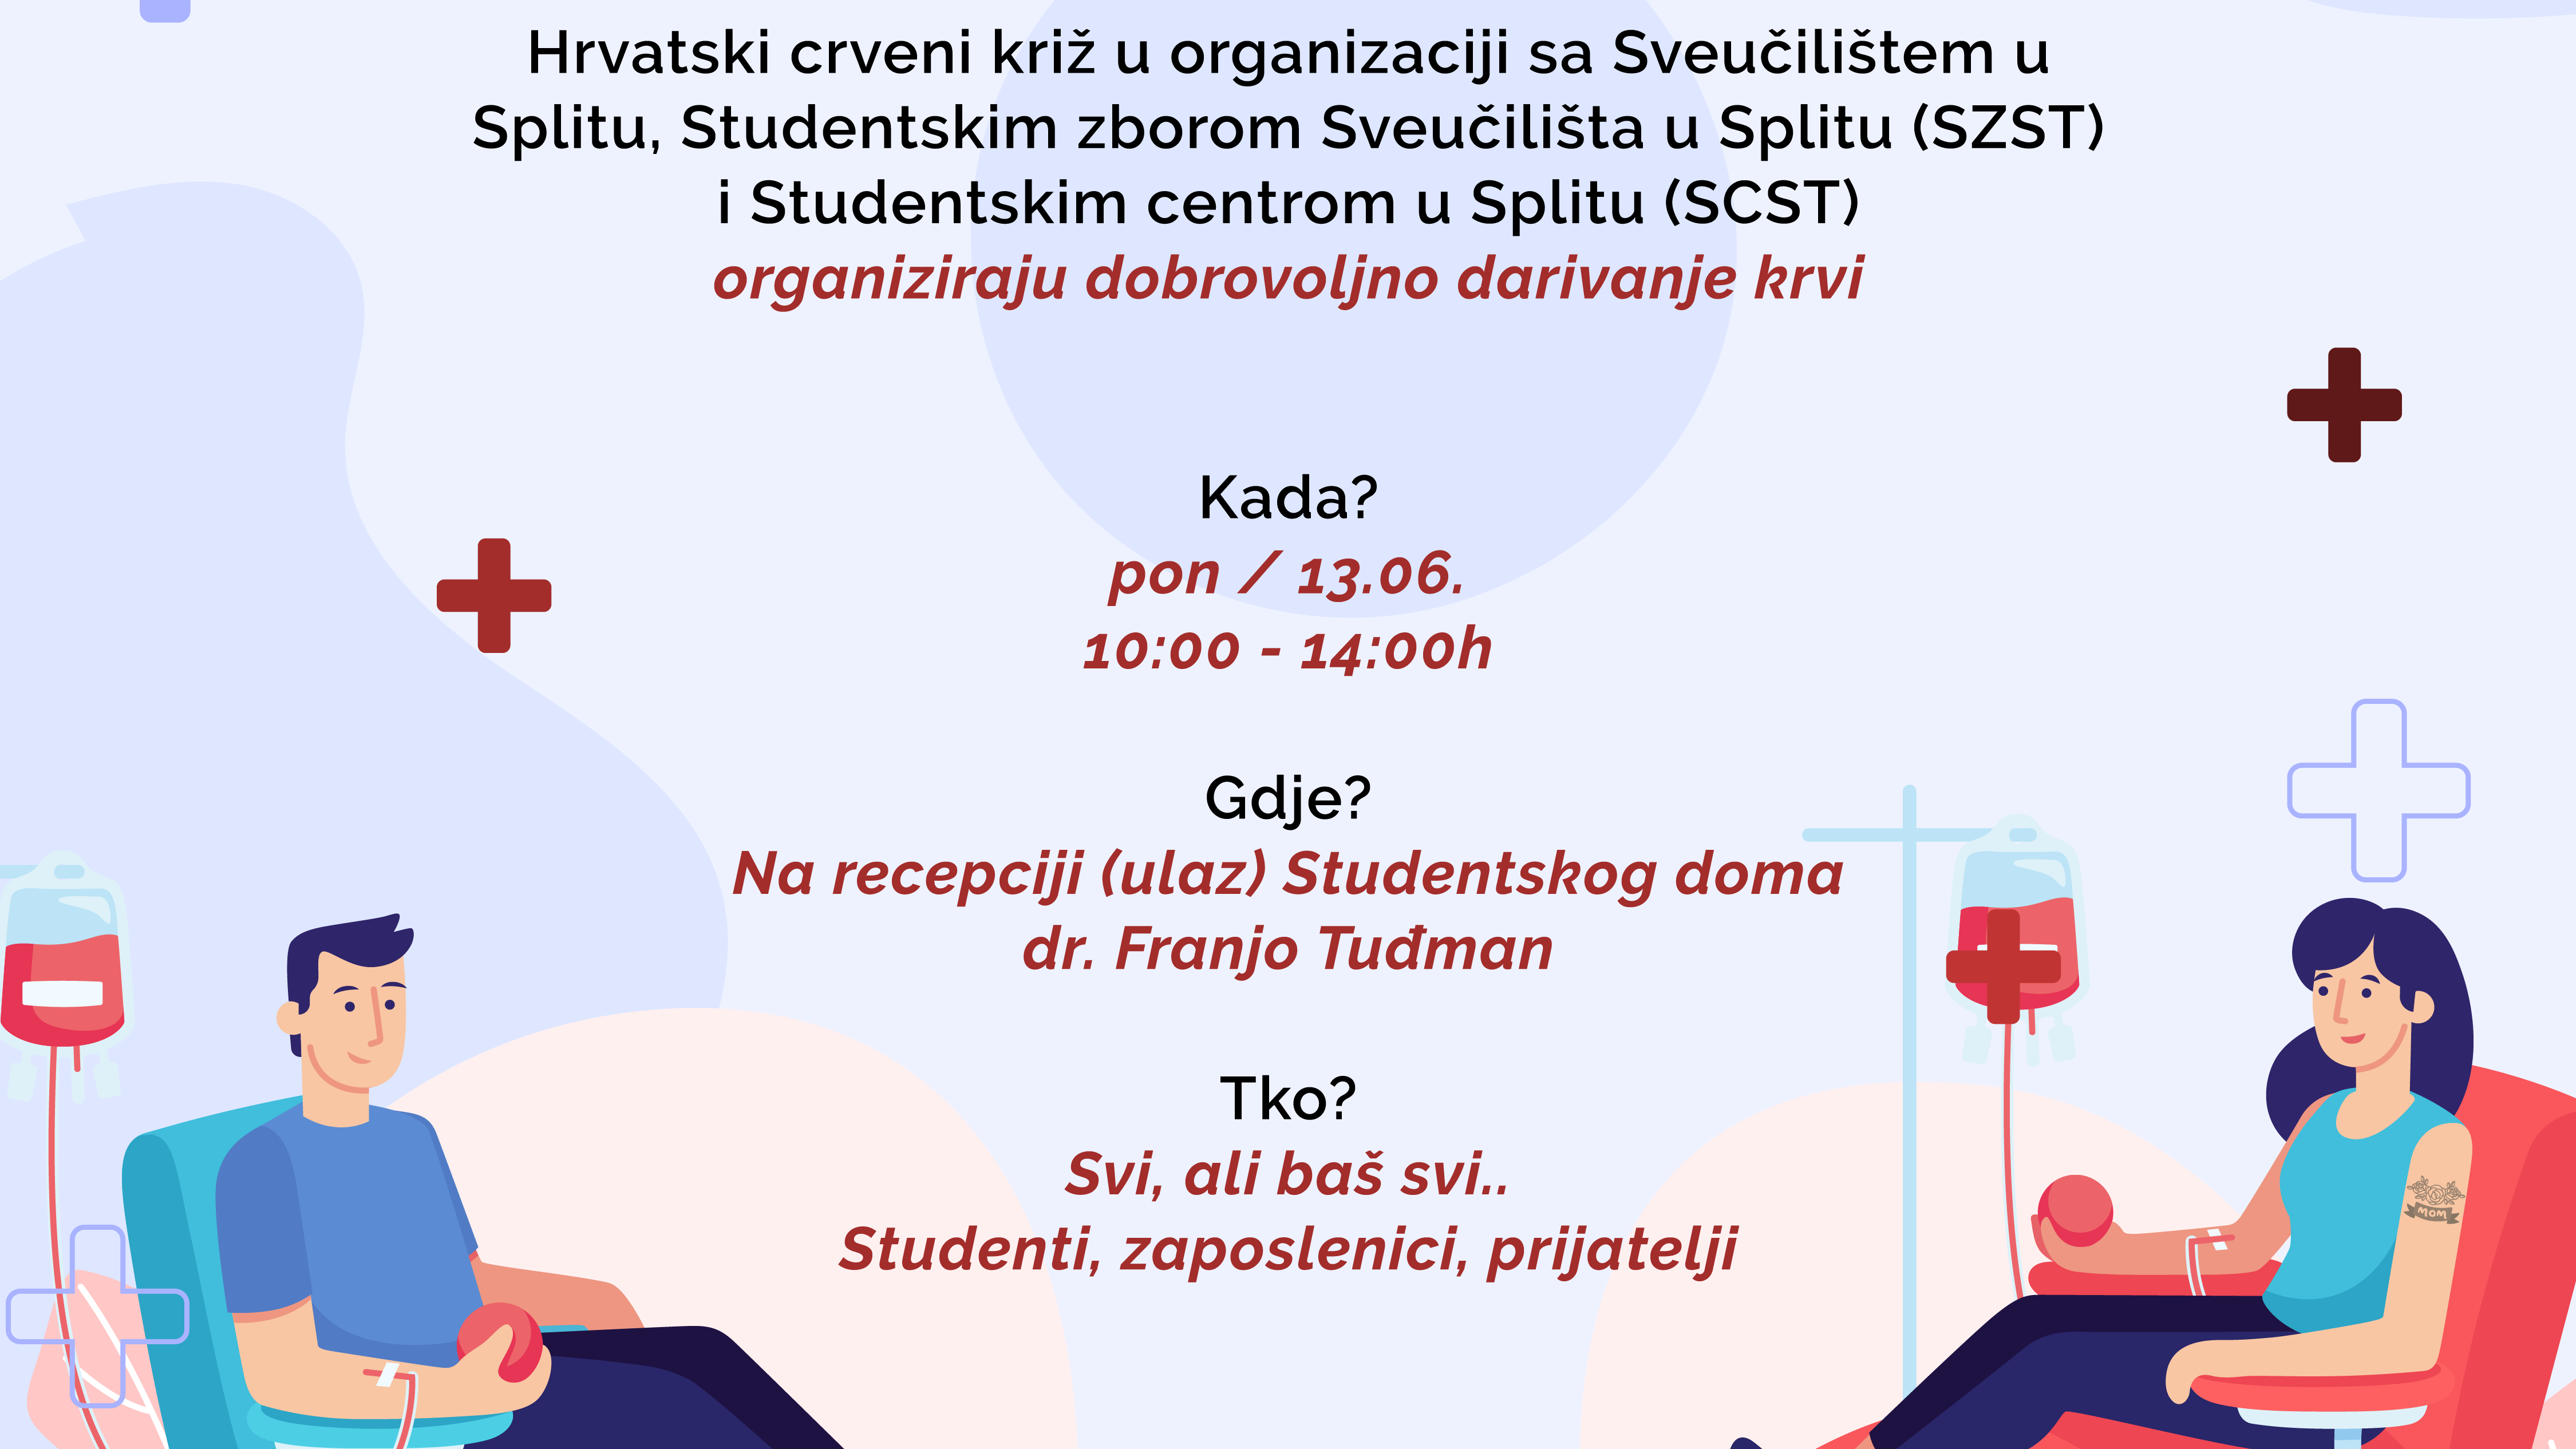 Ponedjeljak, 13. lipnja 2022. akcija darivanja krvi na Sveučilištu u Splitu